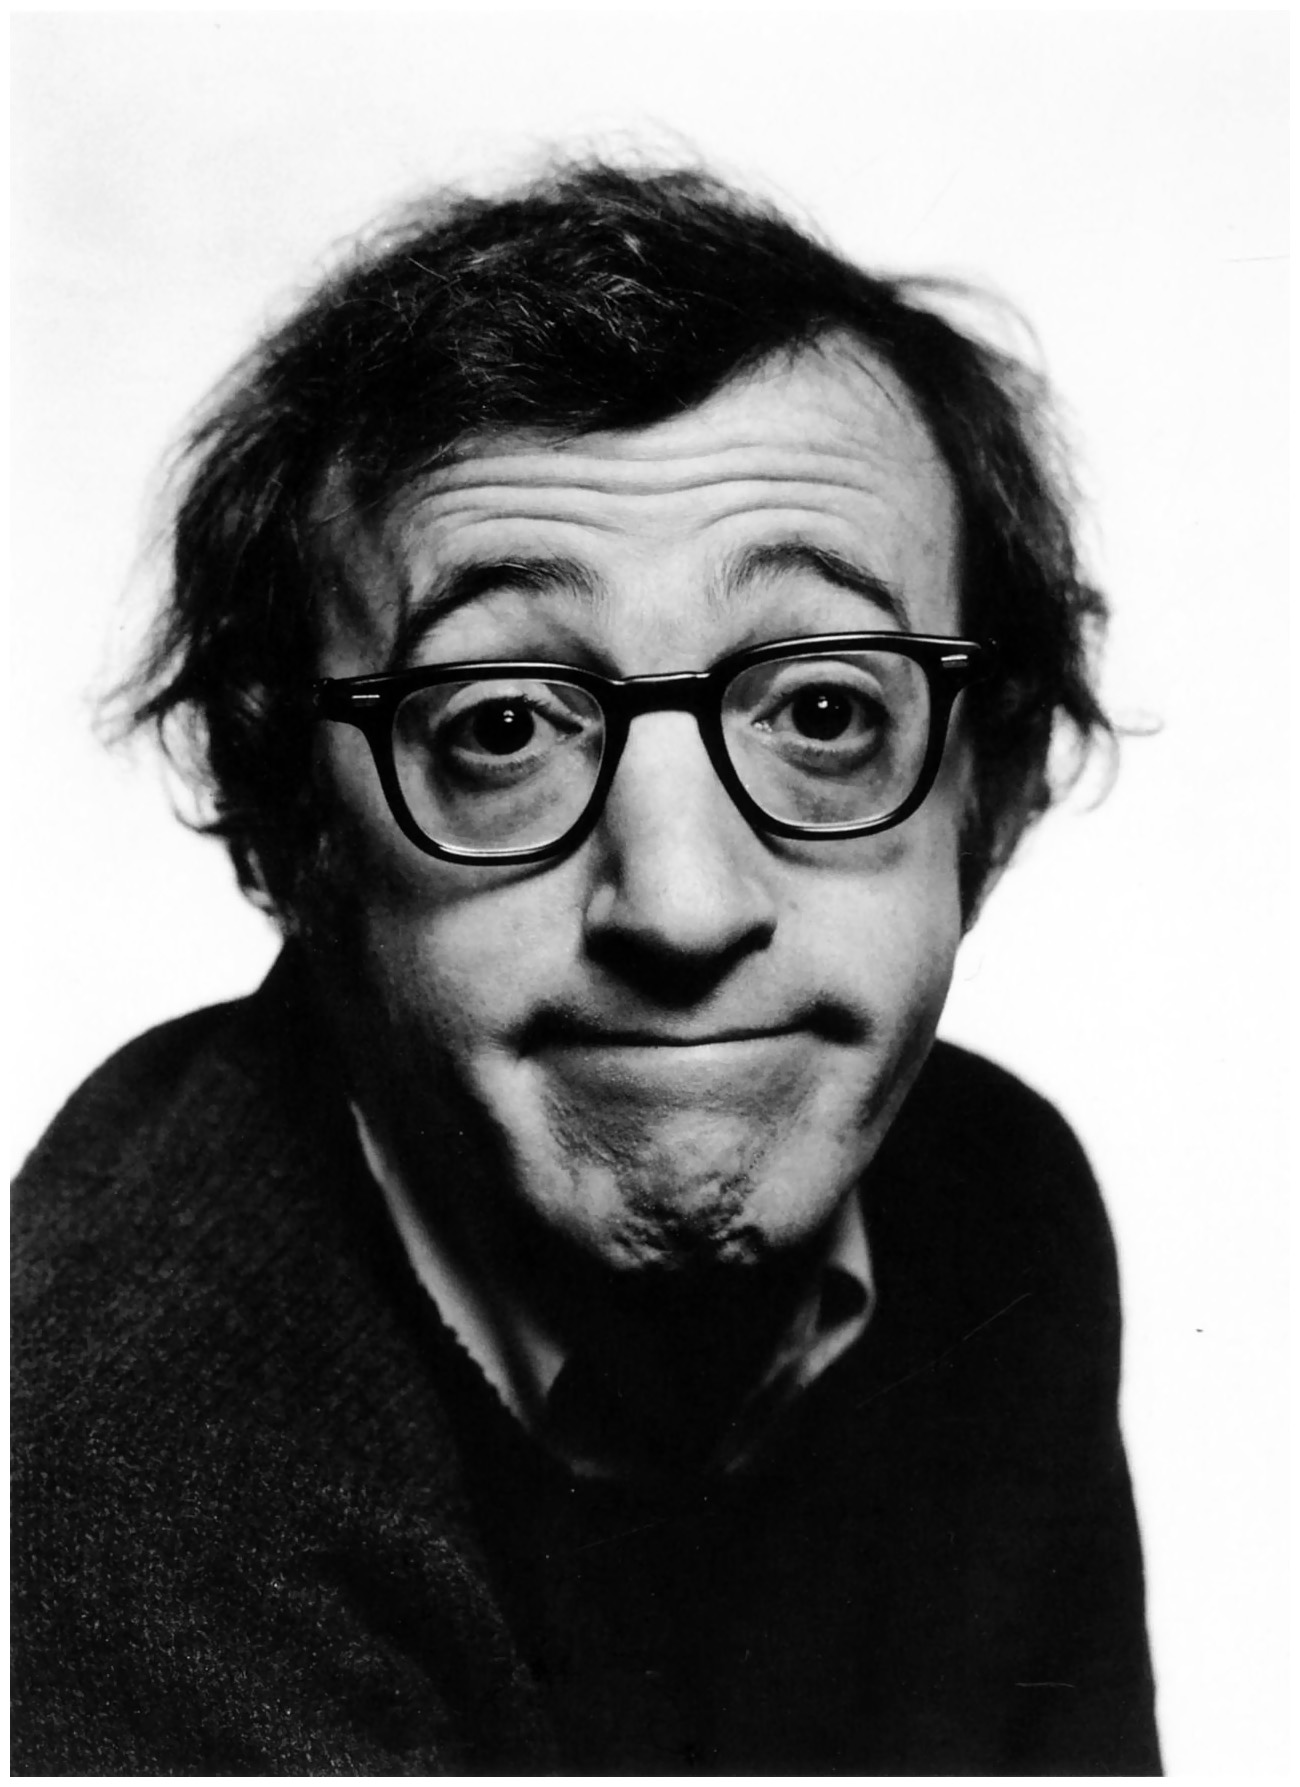 Ode a Woody Allen, il misogino che va in palla per le minorenni. D’altronde, l’arte è sempre perversa. Chiedete un po’ allo Spirito Santo